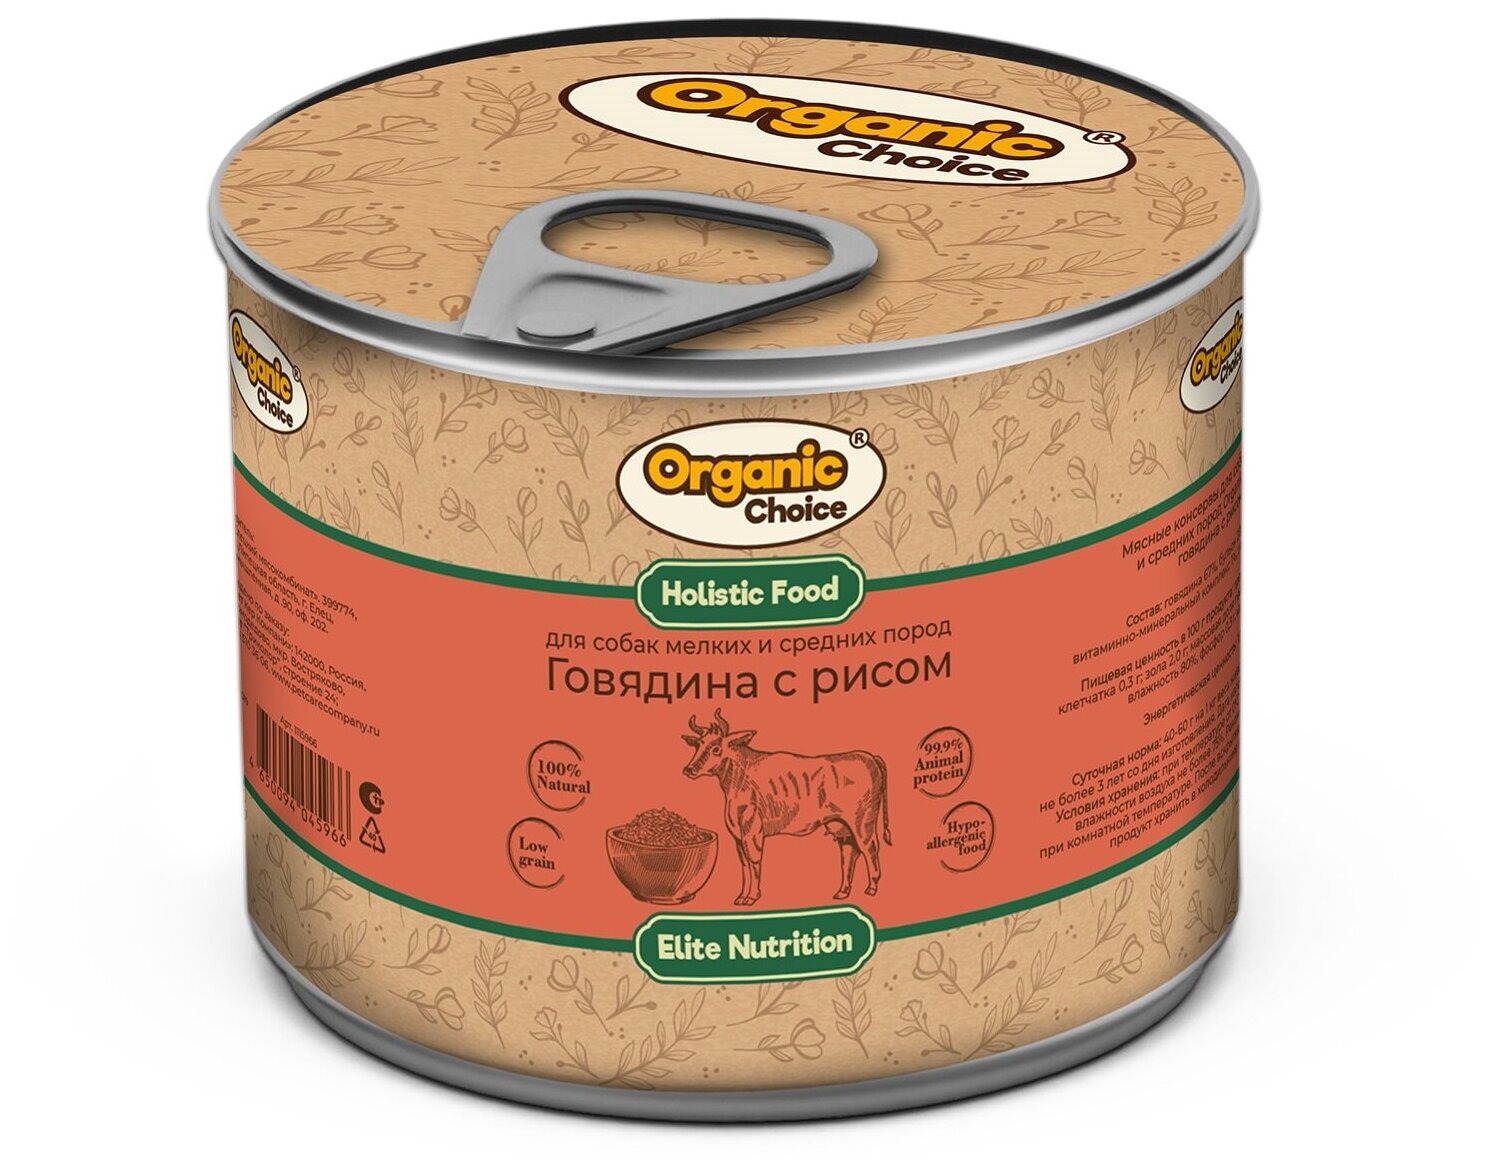 Organic Сhoice влажный корм для собак малых и средних пород, говядина с рисом (12шт в уп) 240 гр